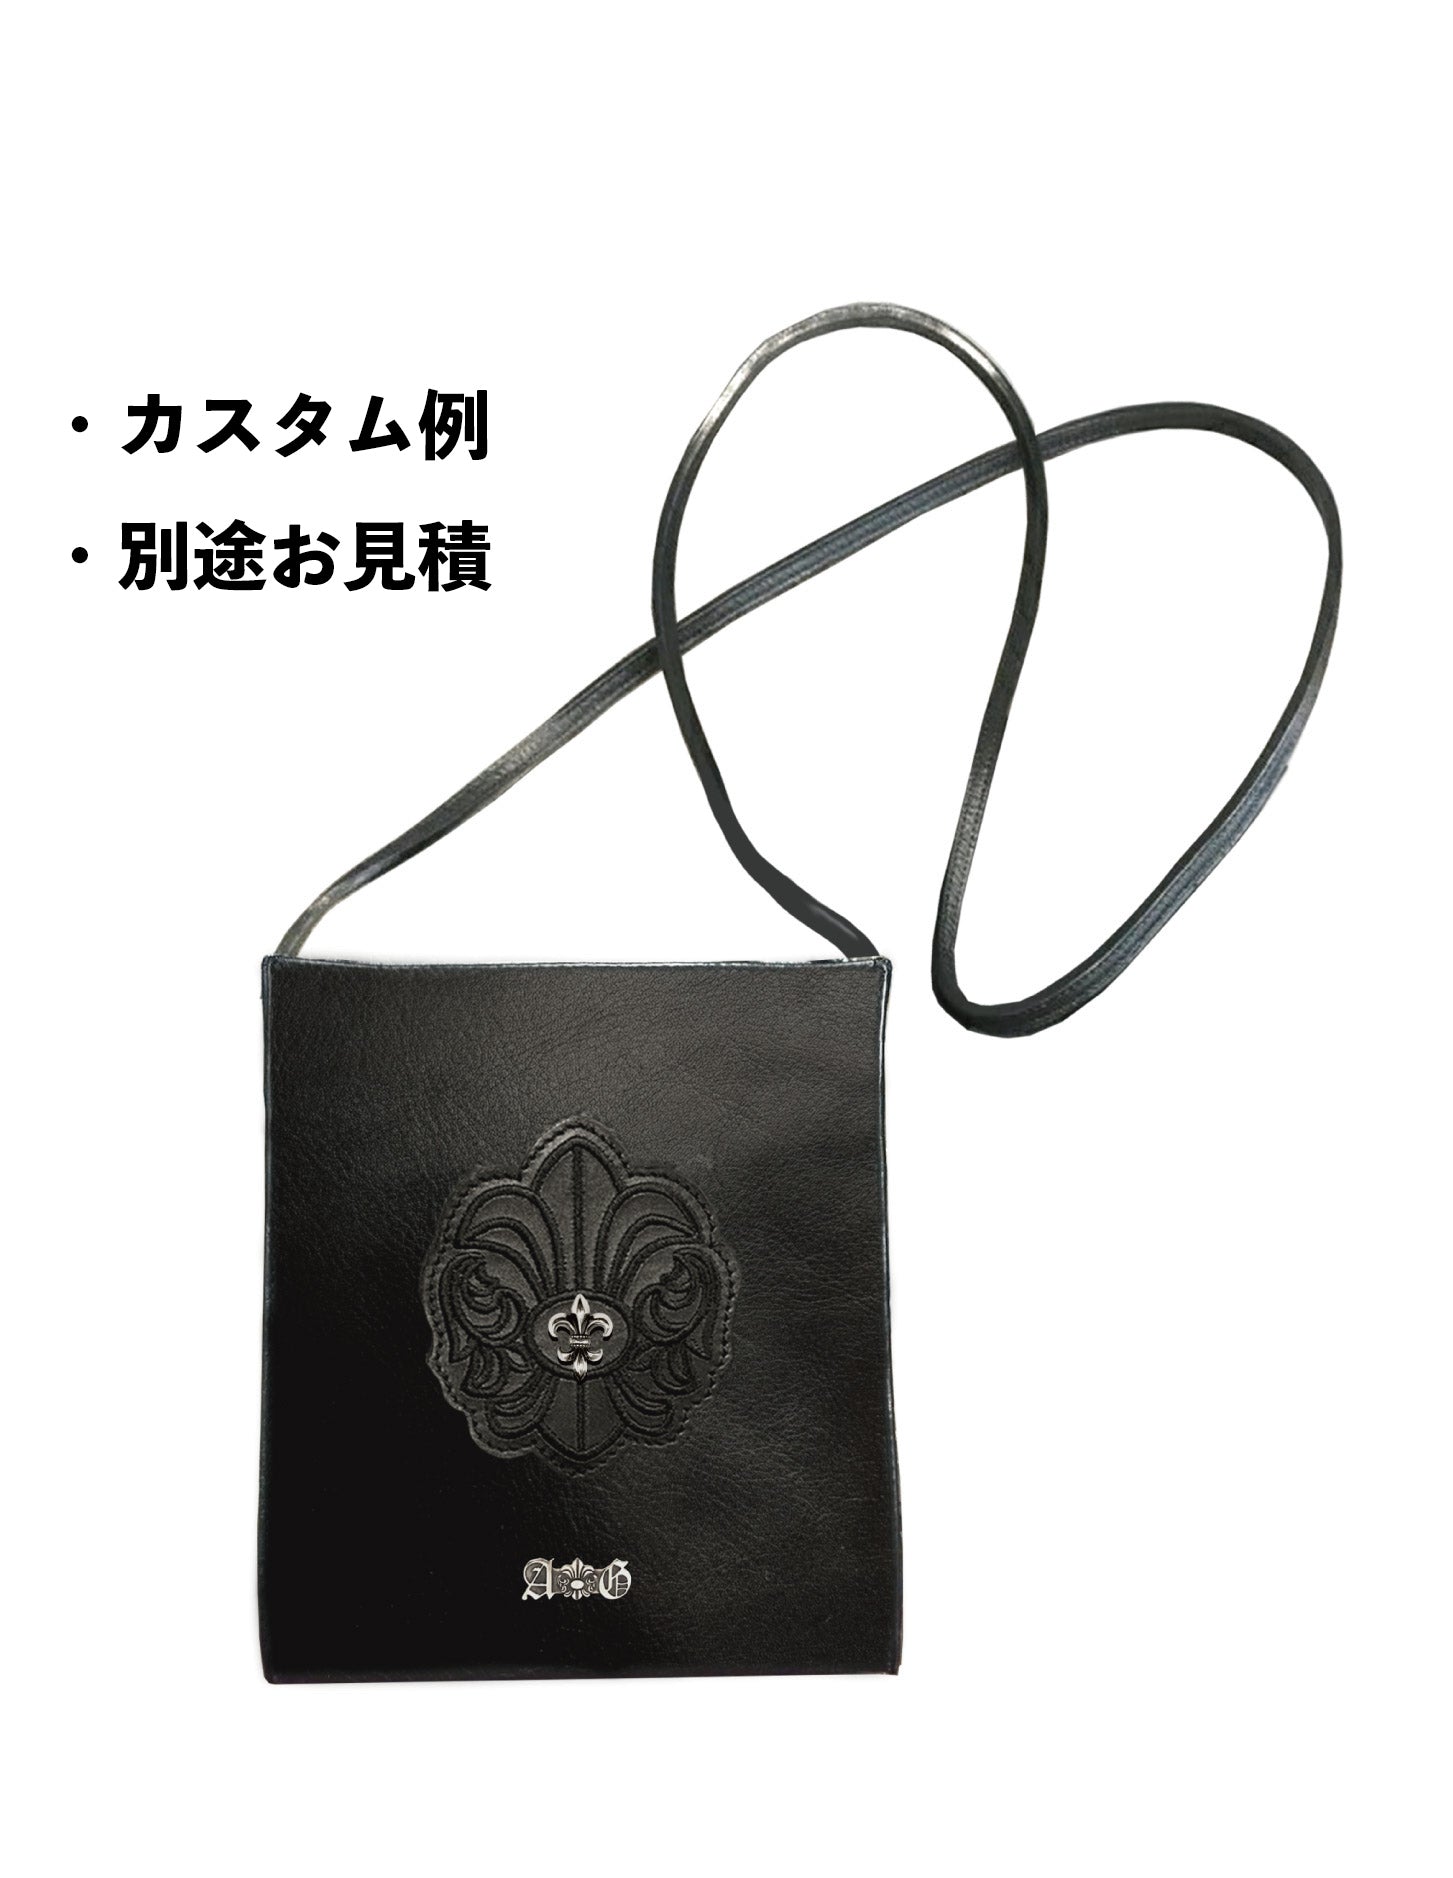 LEATHER SHOULDER BAG / FDL-A&G LOGO SILVER – A&G JAPAN 公式